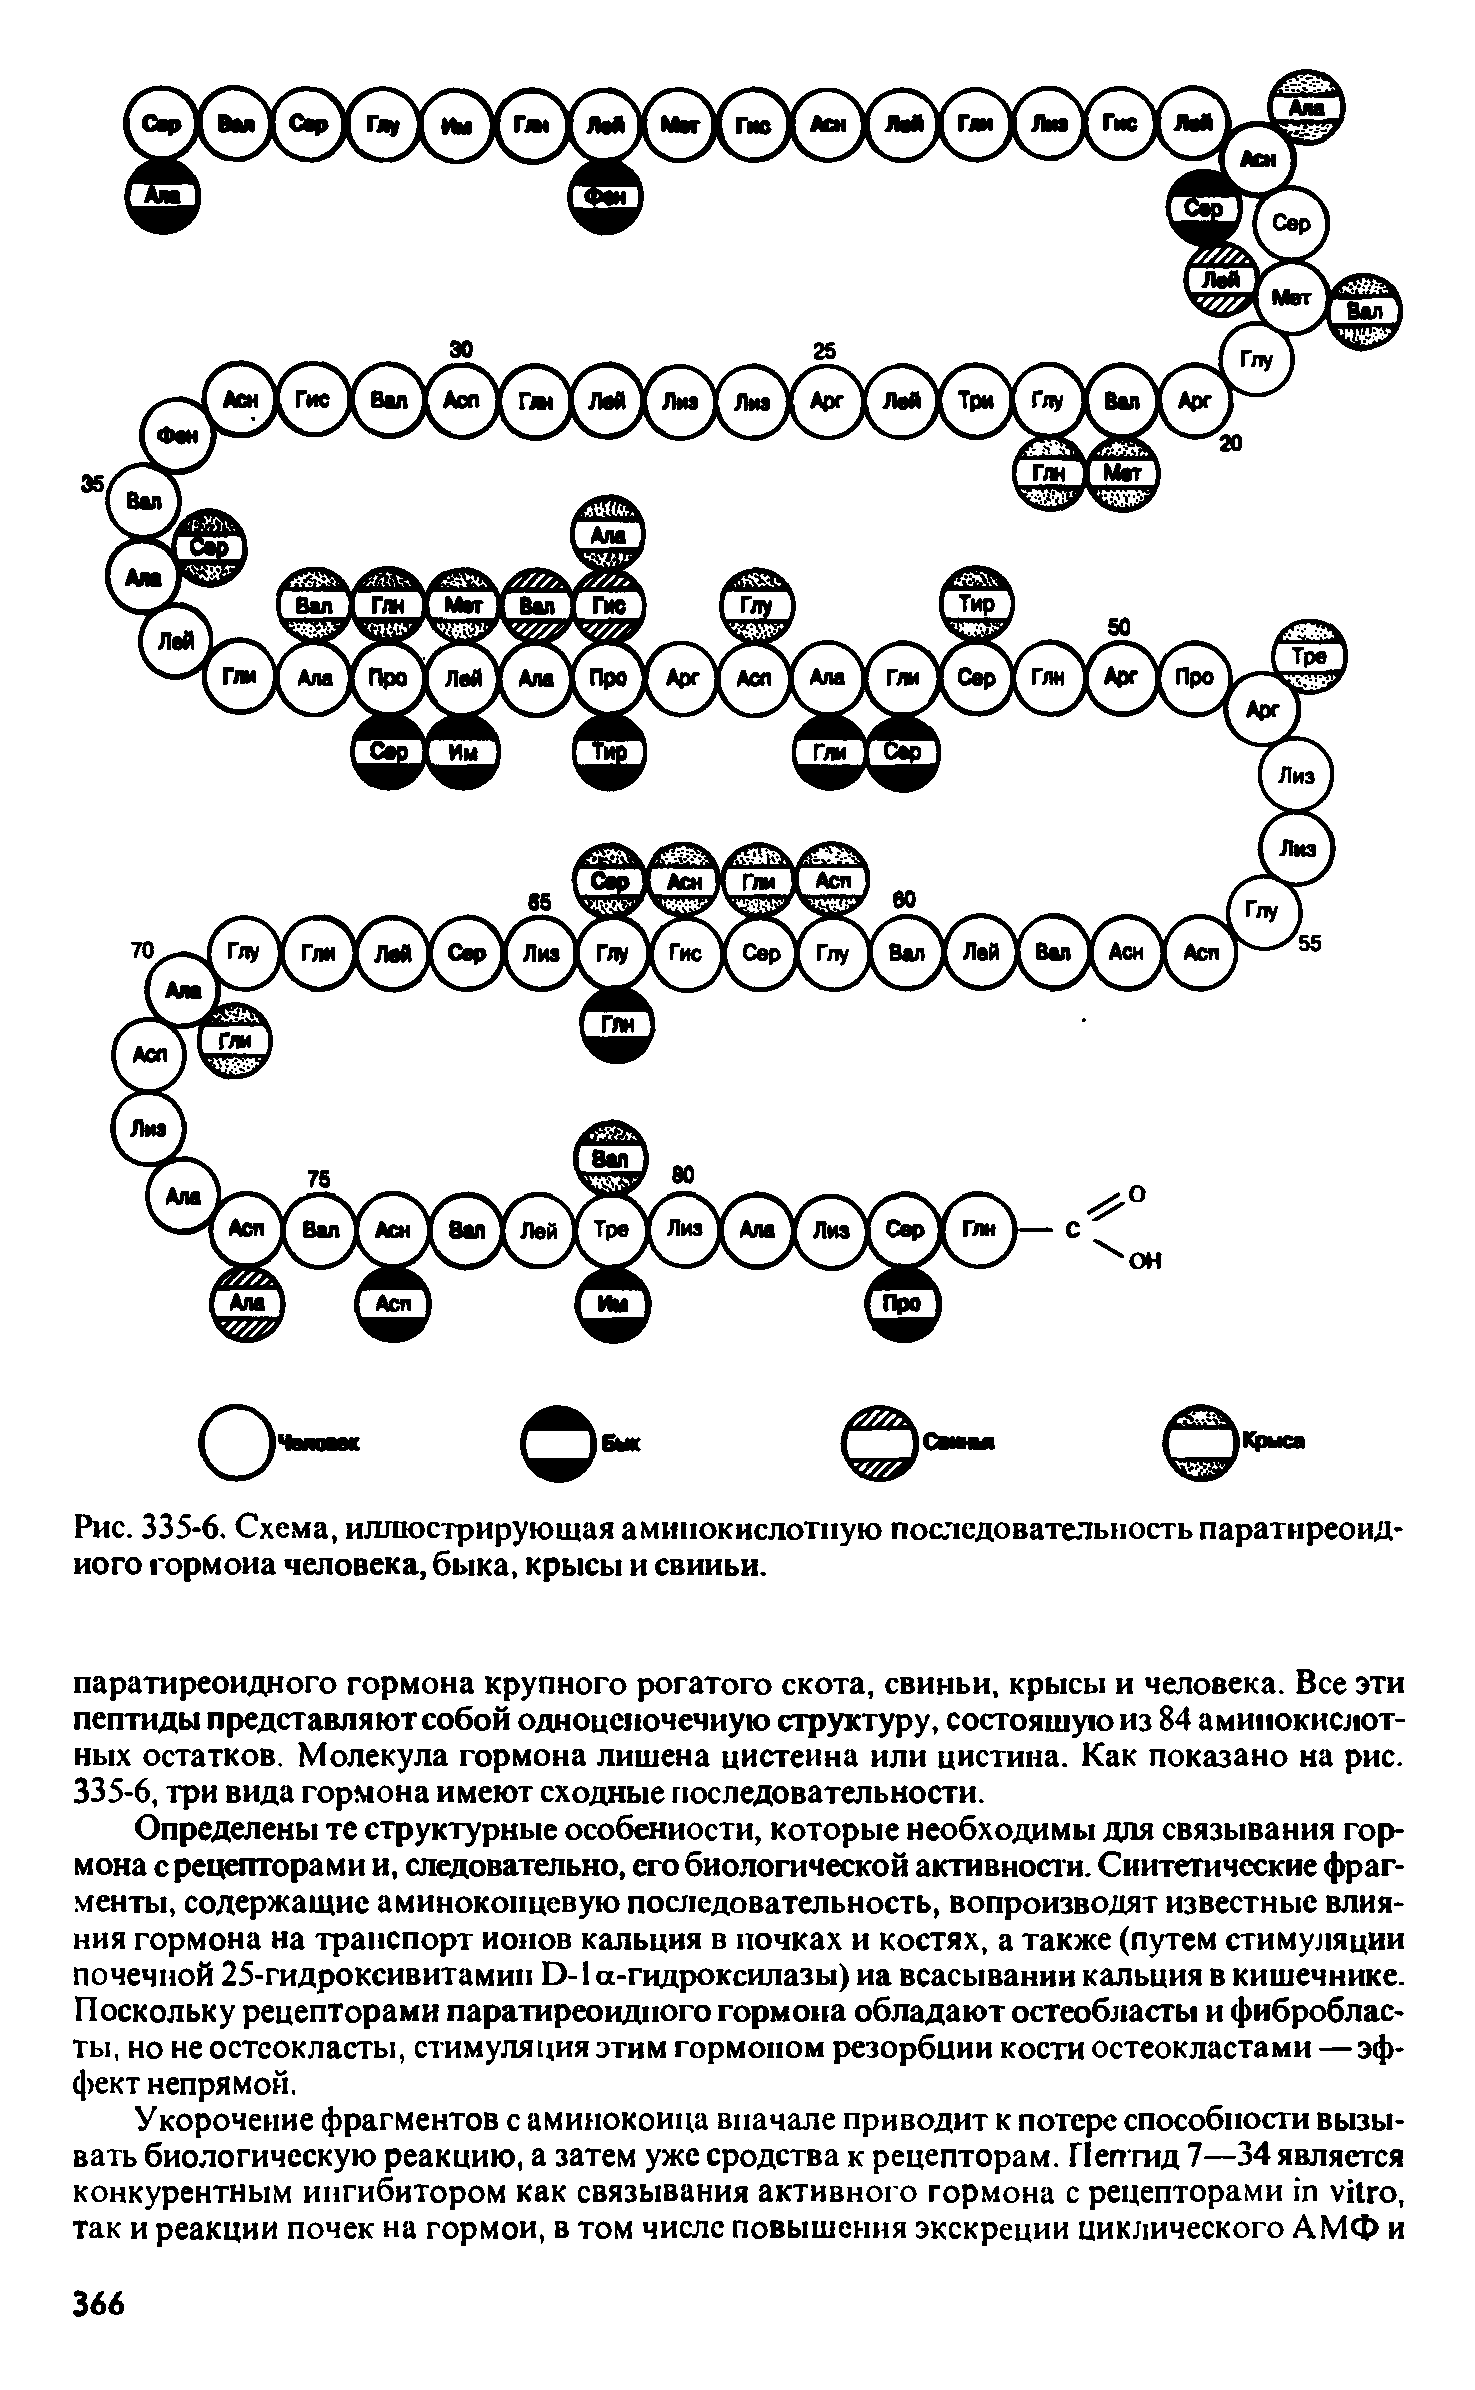 Рис. 335-6. Схема, иллюстрирующая аминокислотную последовательность паратиреоидного гормона человека, быка, крысы и свиньи.